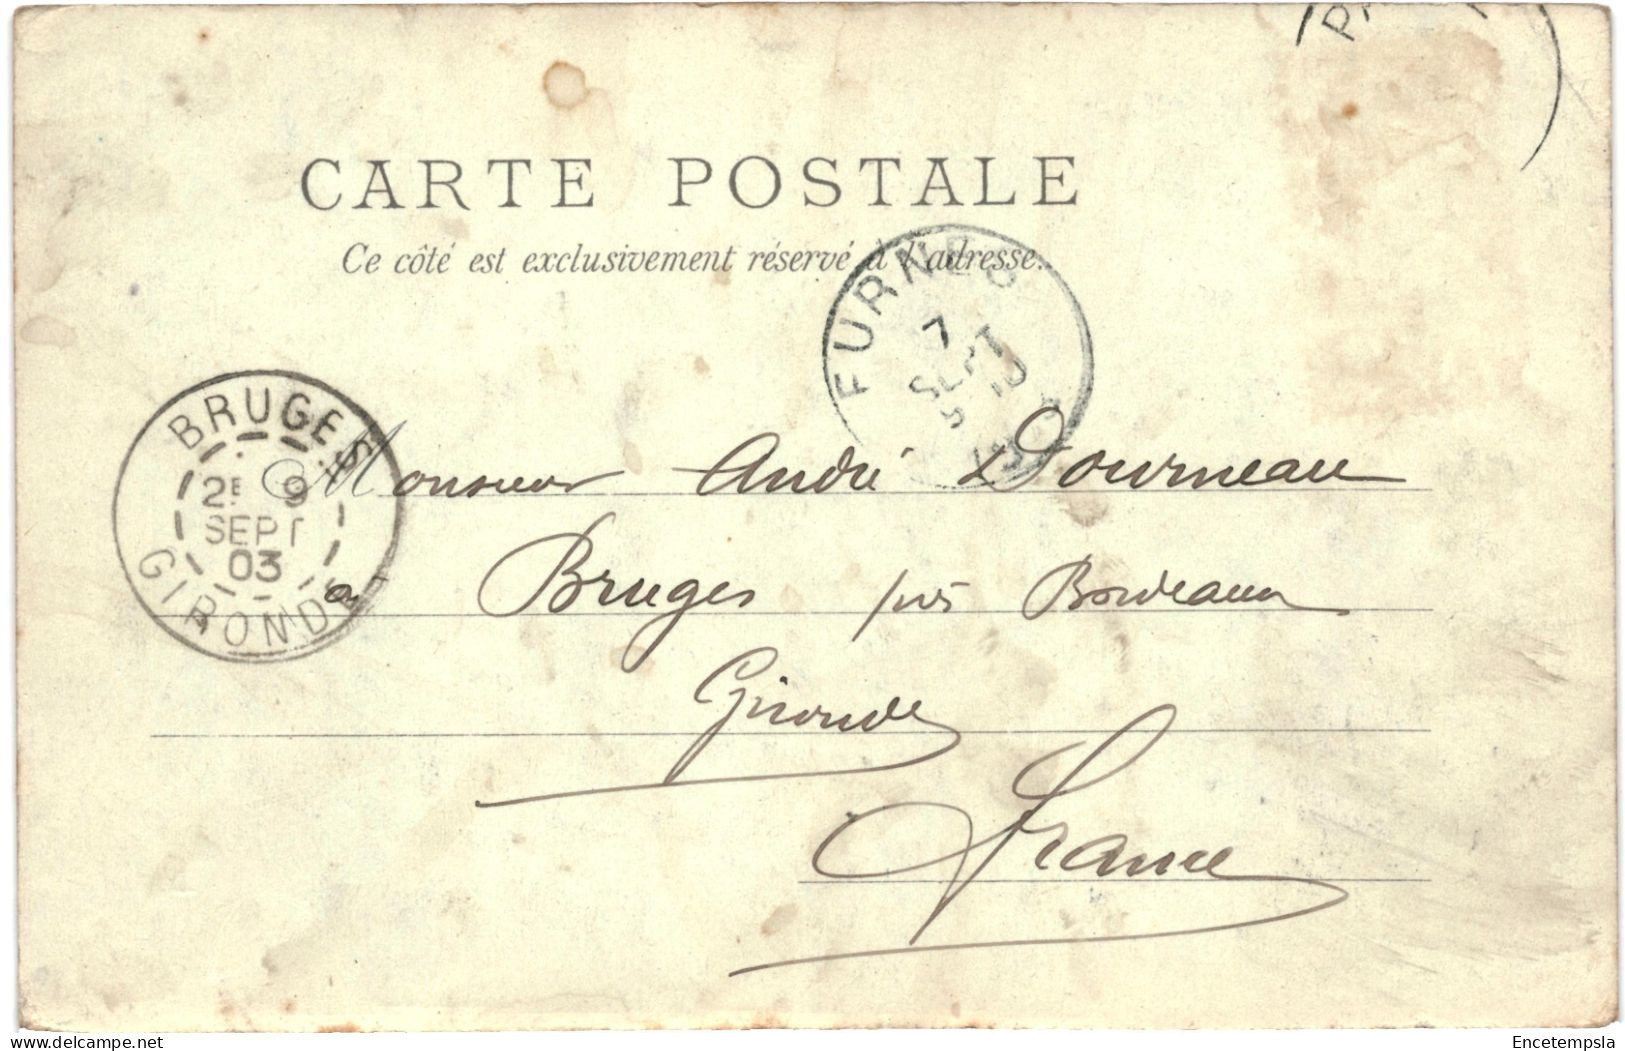 CPA Carte Postale Belgique Entre La Panne Et Oostdunkerke Pêcheur De Crevettes 1903  VM80889 - De Panne